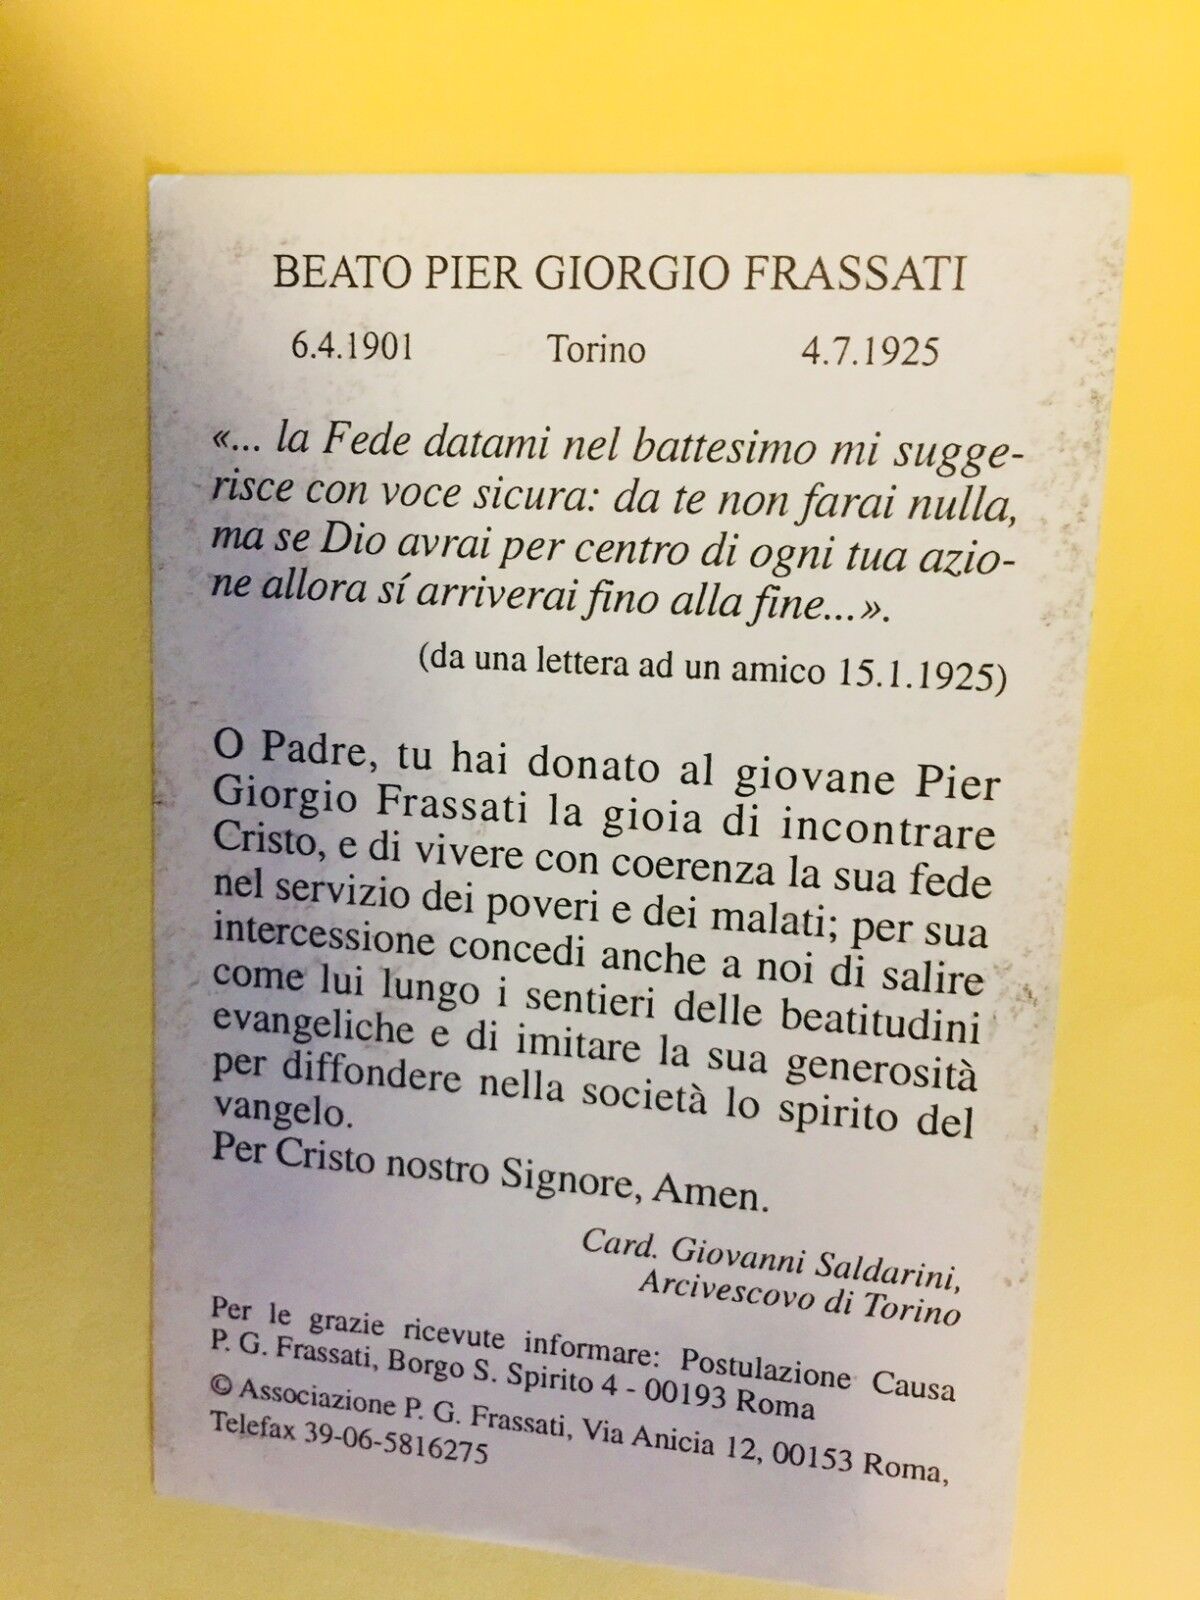 Beato Pier Giorgio Frassati, Preghiera in Italiano, Nuovo dall' Italia - Bob and Penny Lord